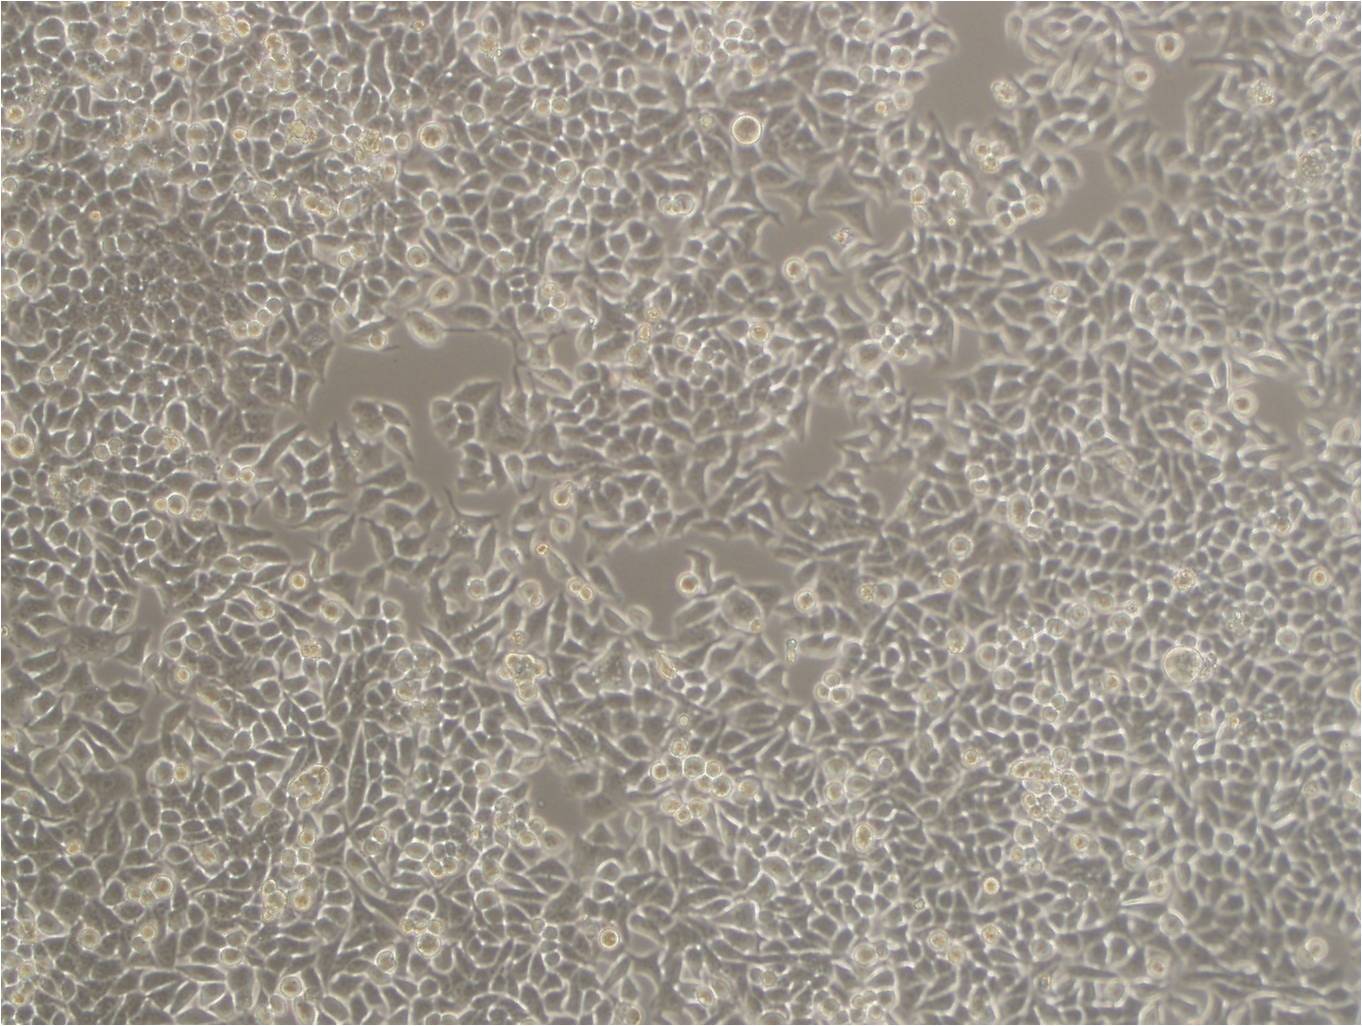 GC9811-P cell line人胃癌腹膜高转移细胞系